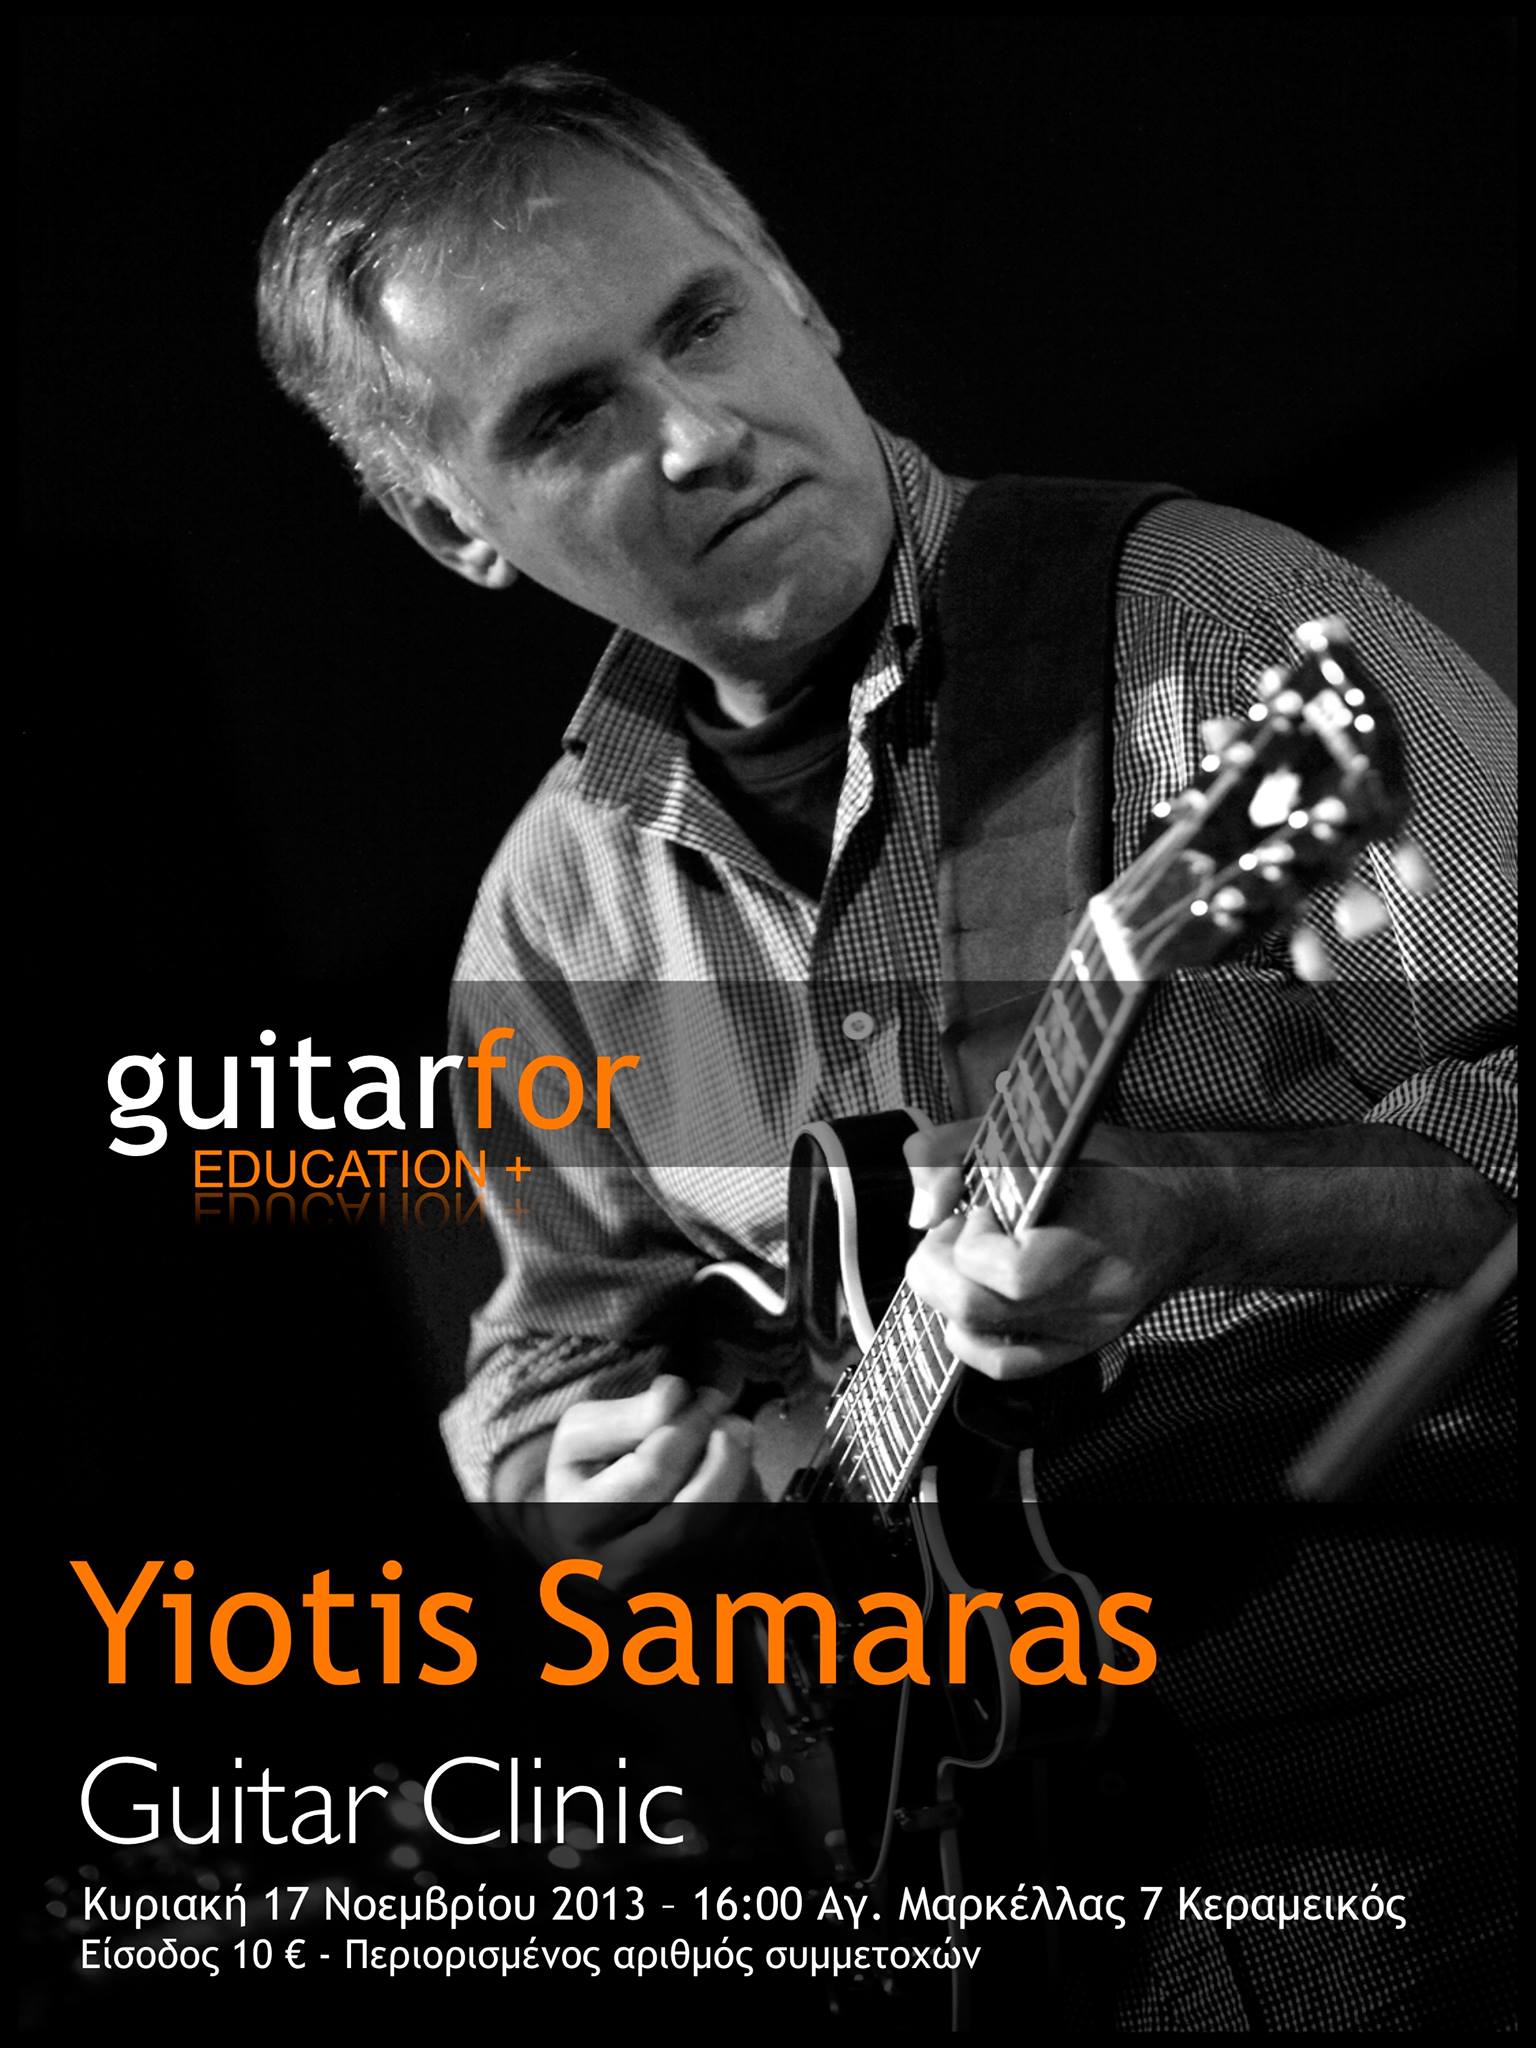 Yiotis Samaras